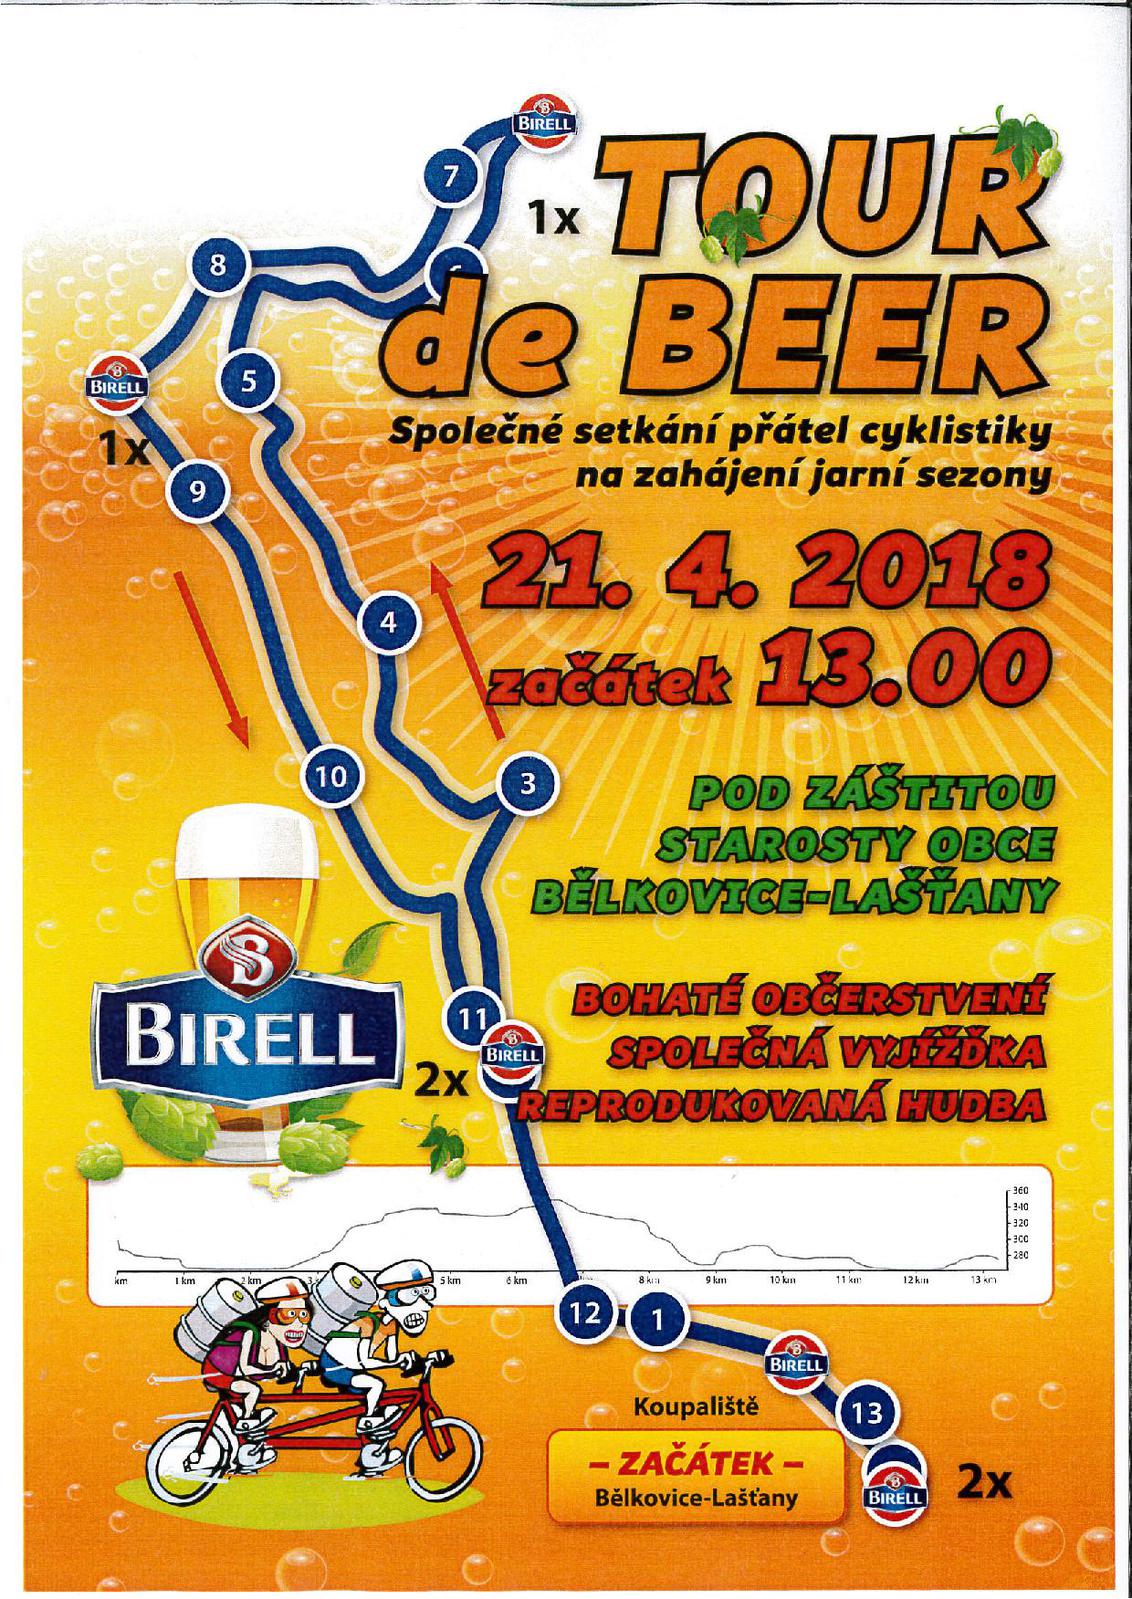 Tour de beer 2018-page-001.jpg